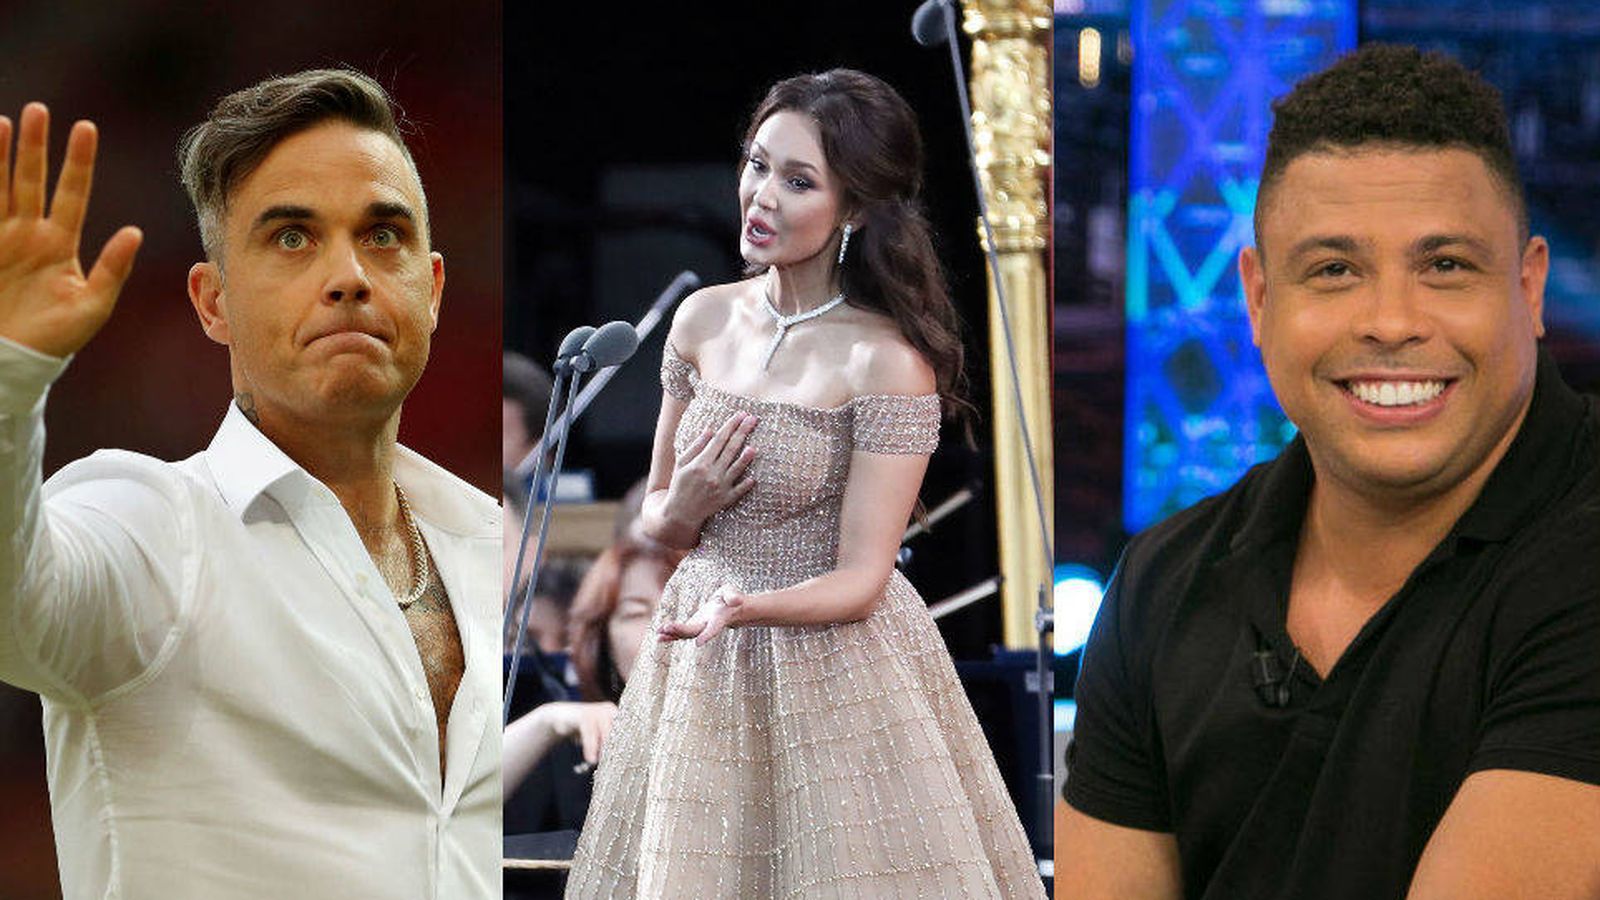 Foto: Robbie Williams, Aida Garillufina y Ronaldo serán las estrellas de la ceremonia de inauguración del Mundial de Rusia 2018